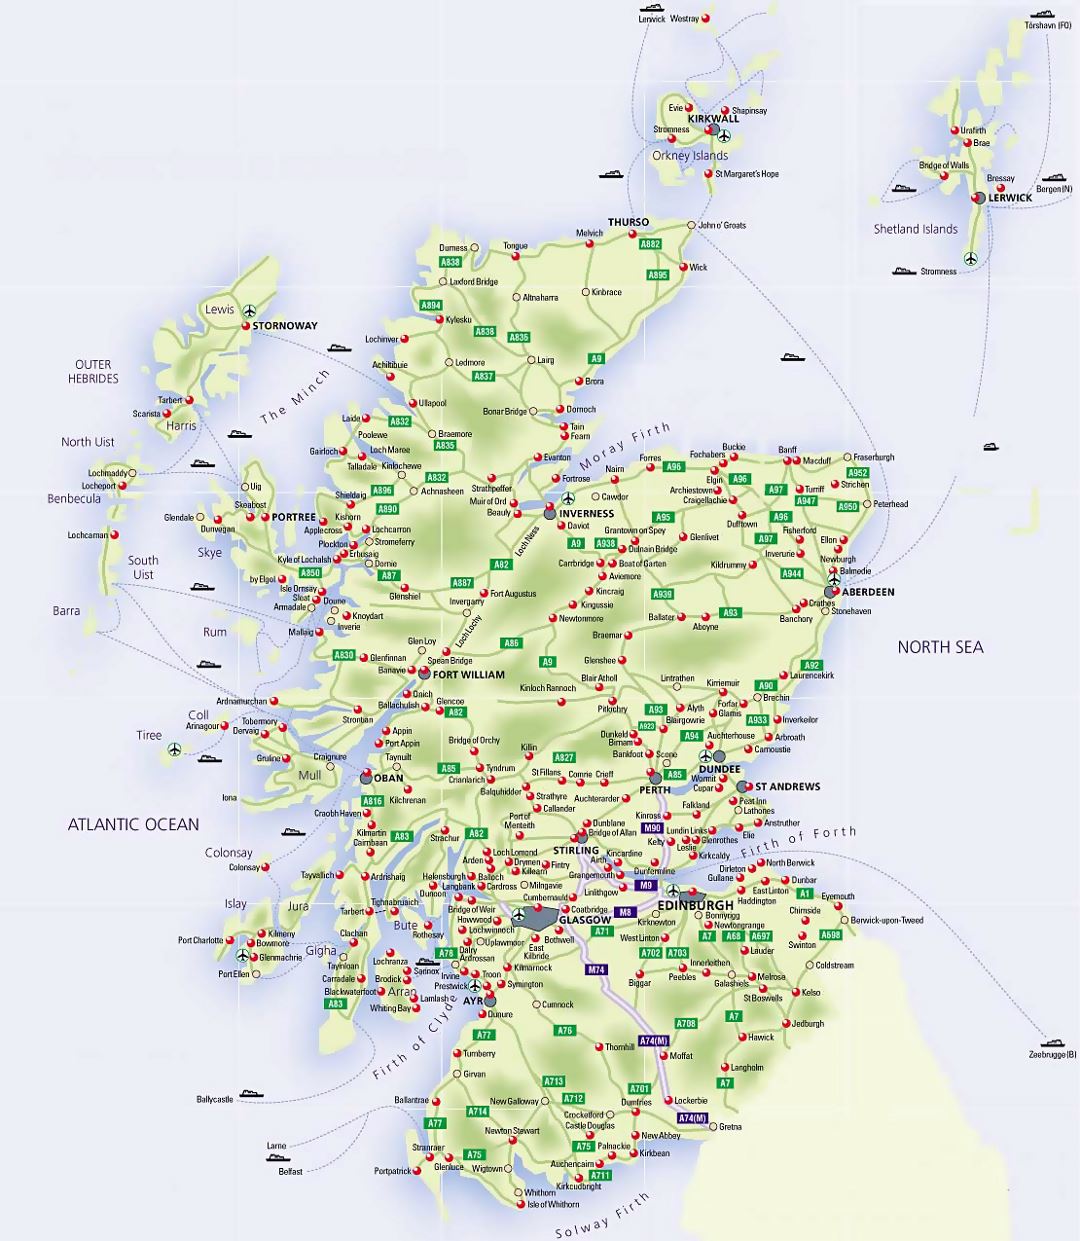 Mapa de carreteras de Escocia con aeropuertos y ciudades